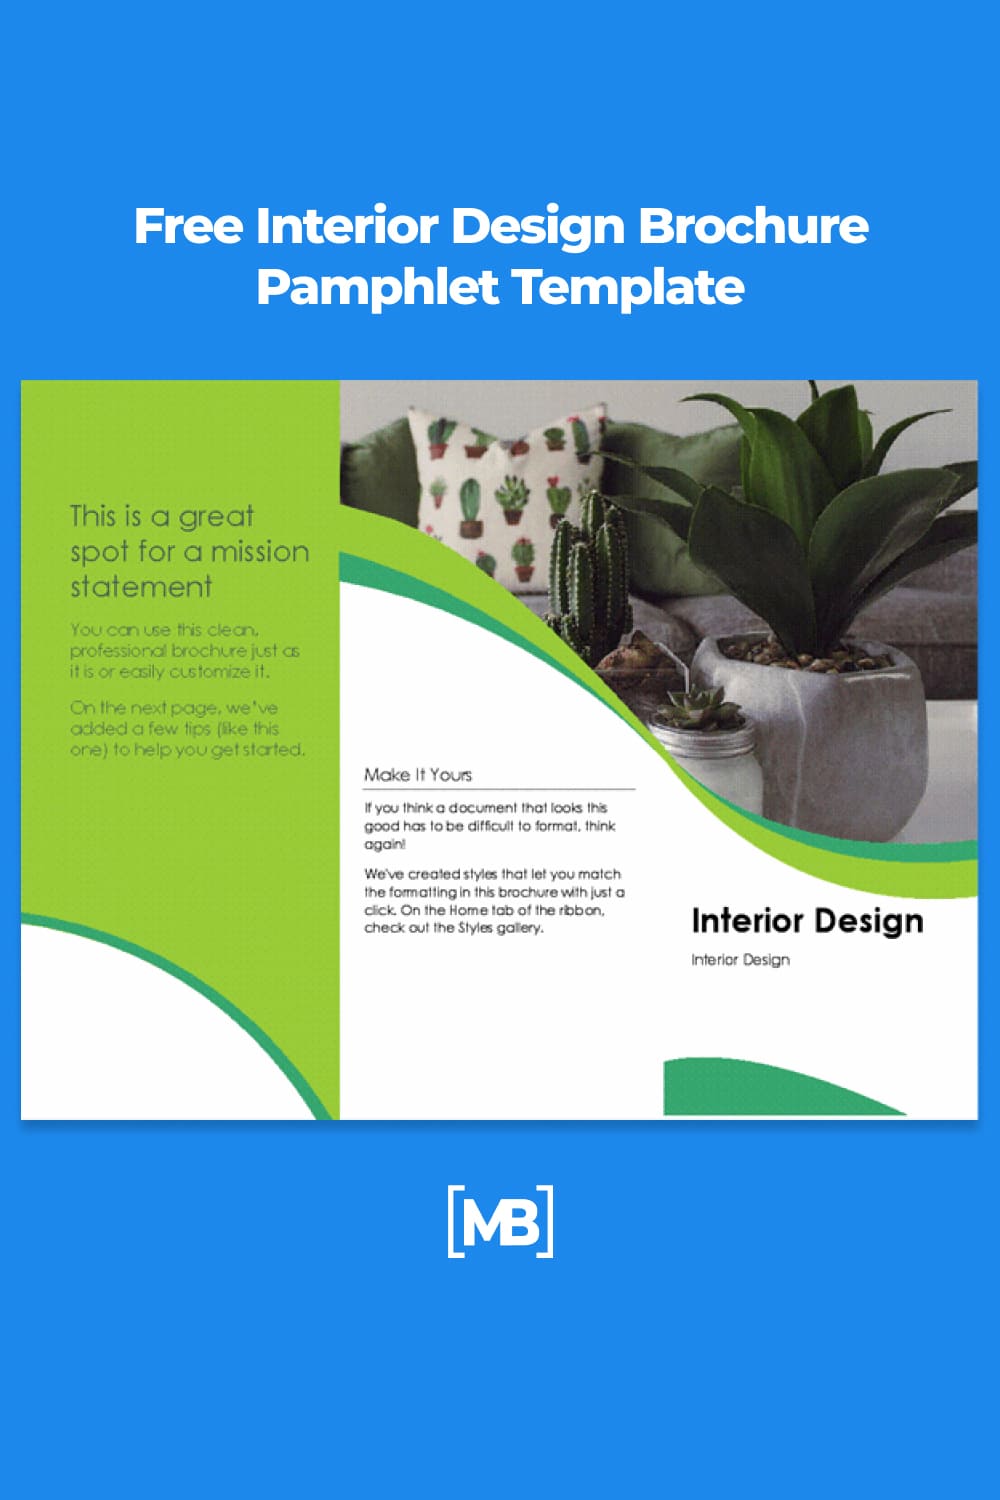 Interior design brochure pamphlet template.